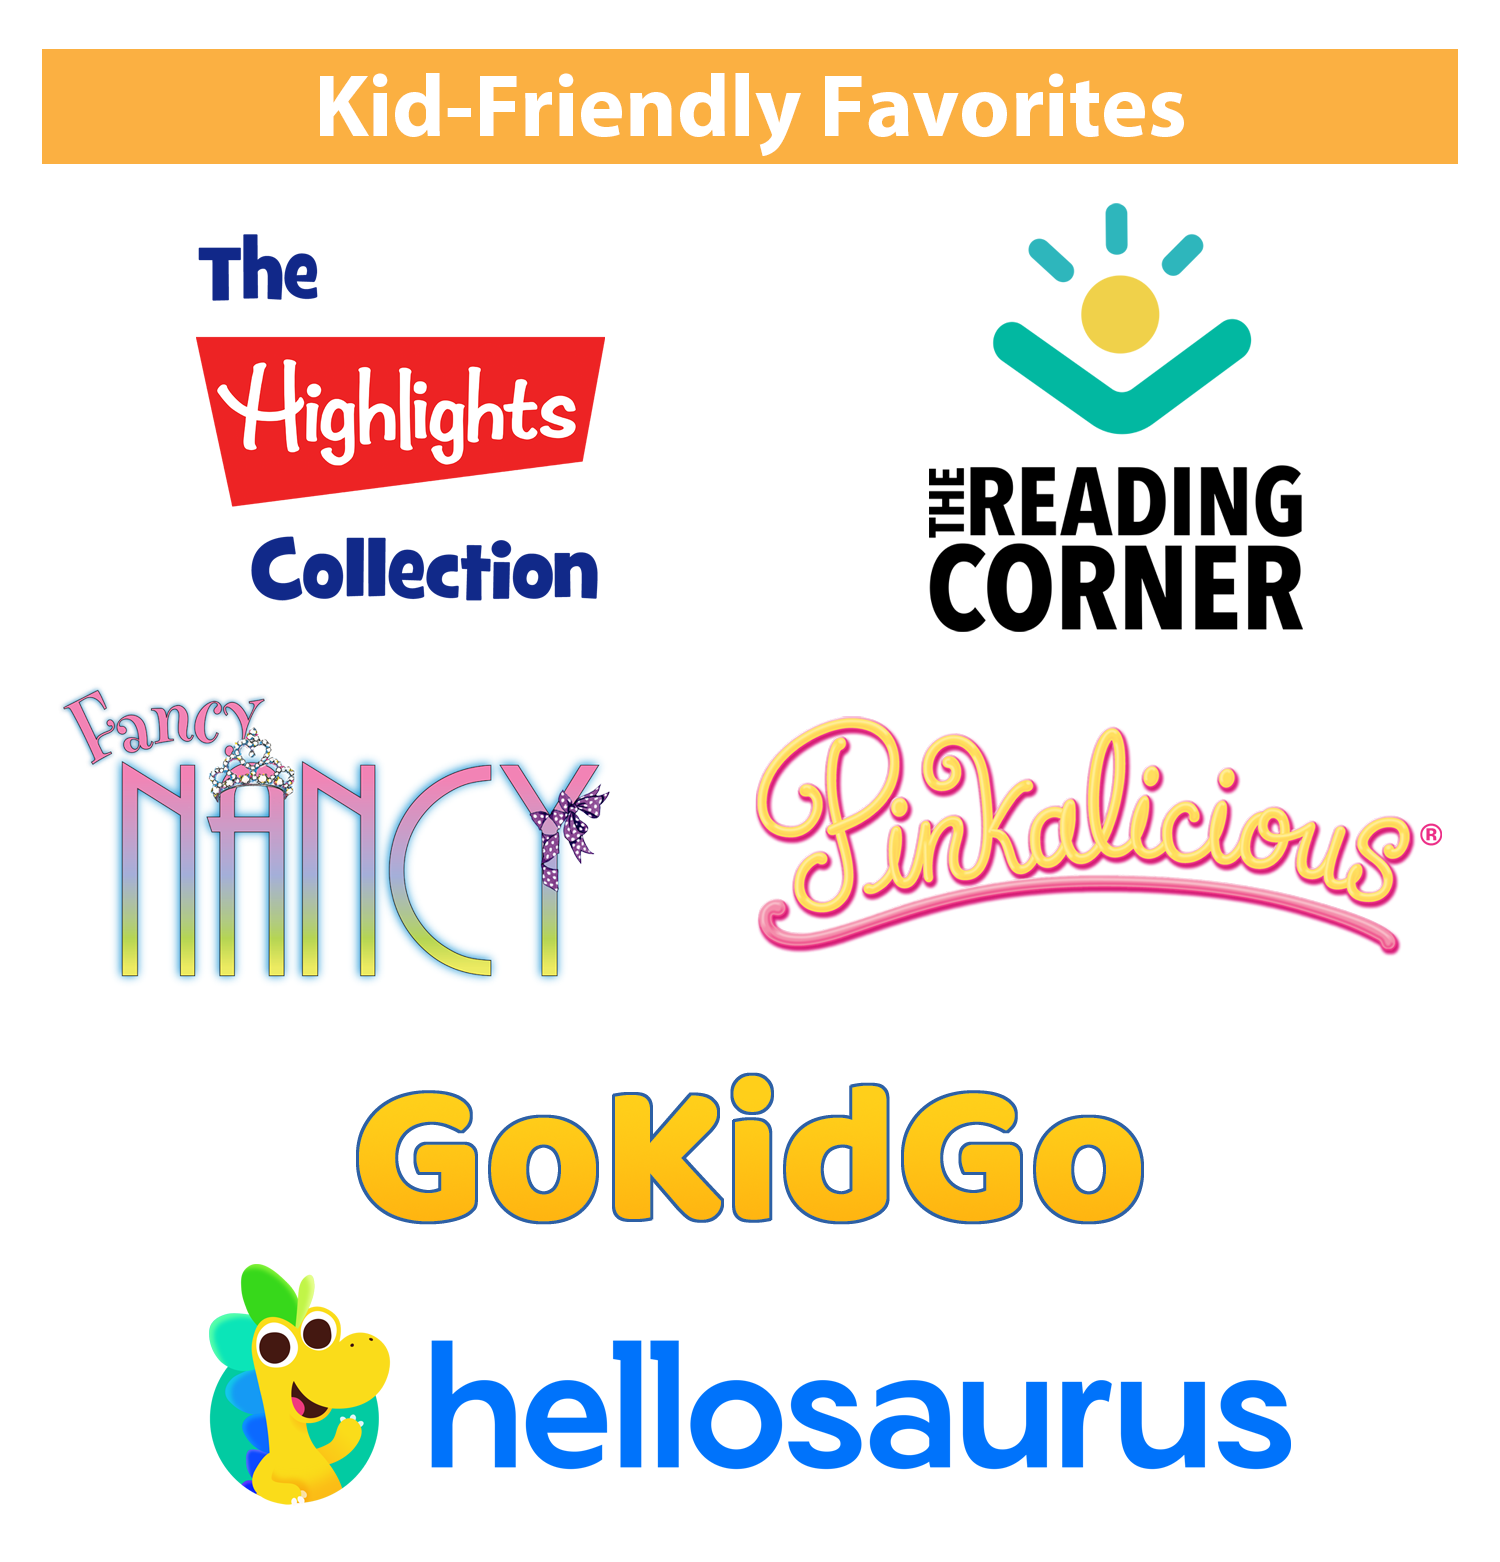 Kid-Friendly Favorites